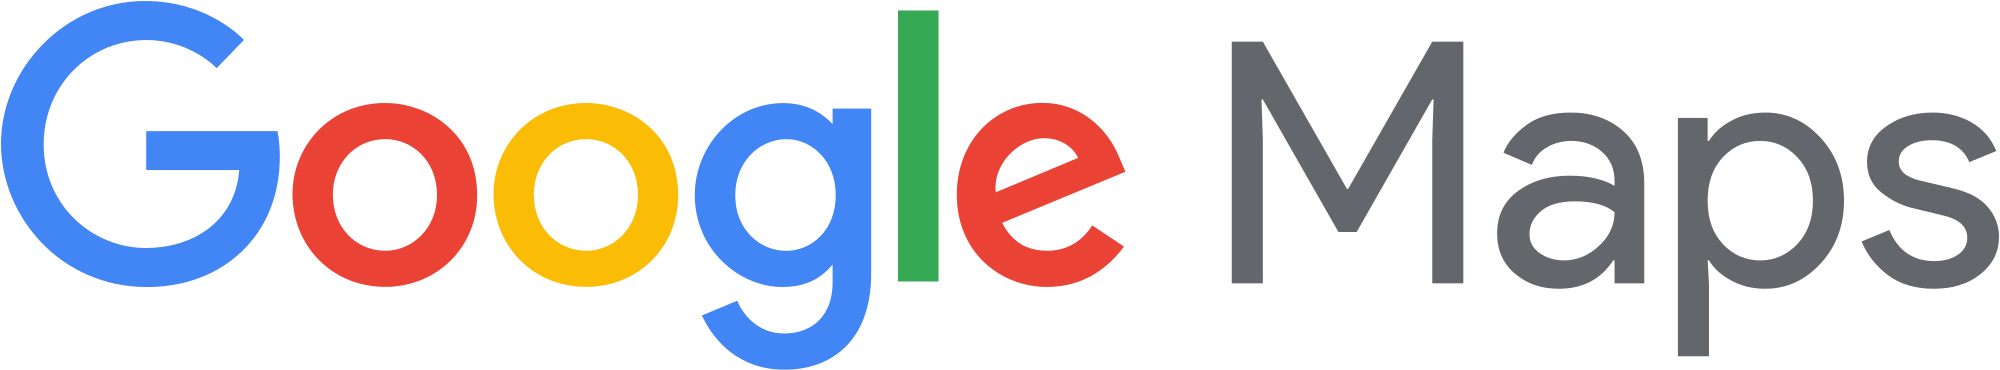 Google Photos Logo PNG - 102702